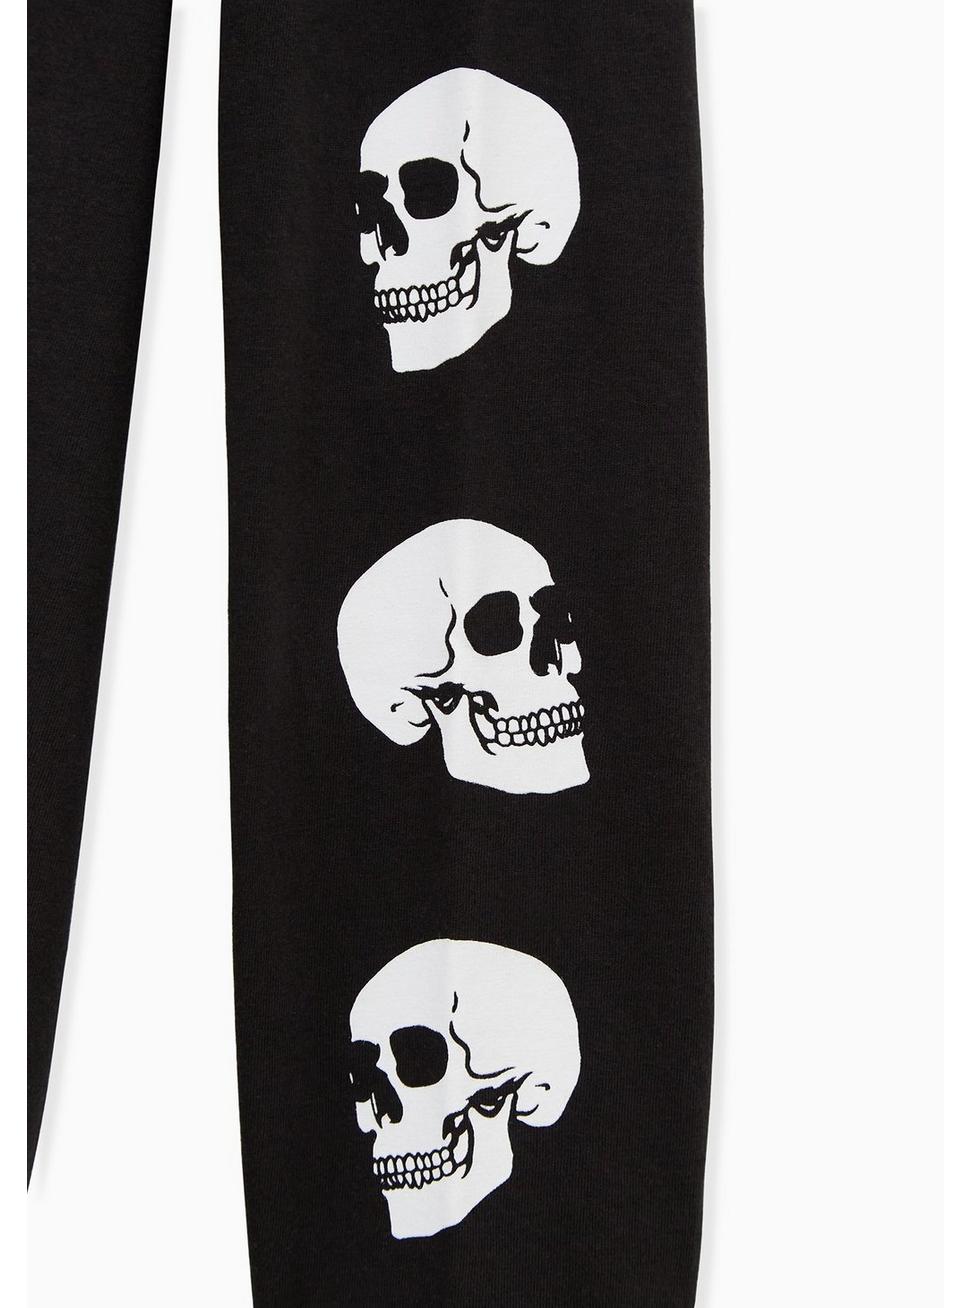 Plus Size - Black Skull Graphic Slim Fit Long Sleeve Tee - Torrid